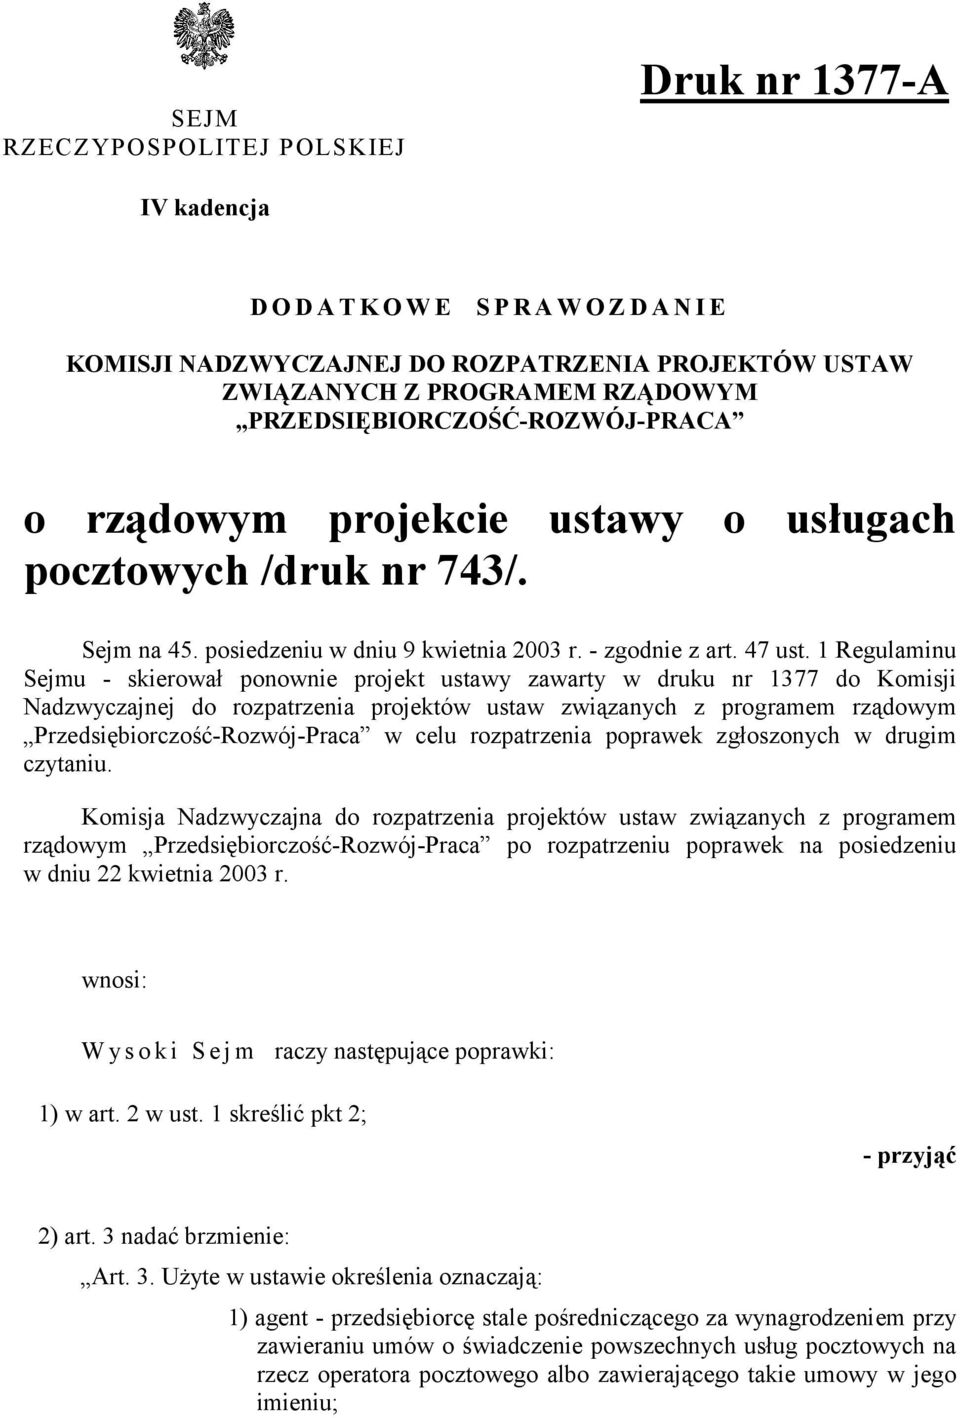 1 Regulaminu Sejmu - skierował ponownie projekt ustawy zawarty w druku nr 1377 do Komisji Nadzwyczajnej do rozpatrzenia projektów ustaw związanych z programem rządowym Przedsiębiorczość-Rozwój-Praca